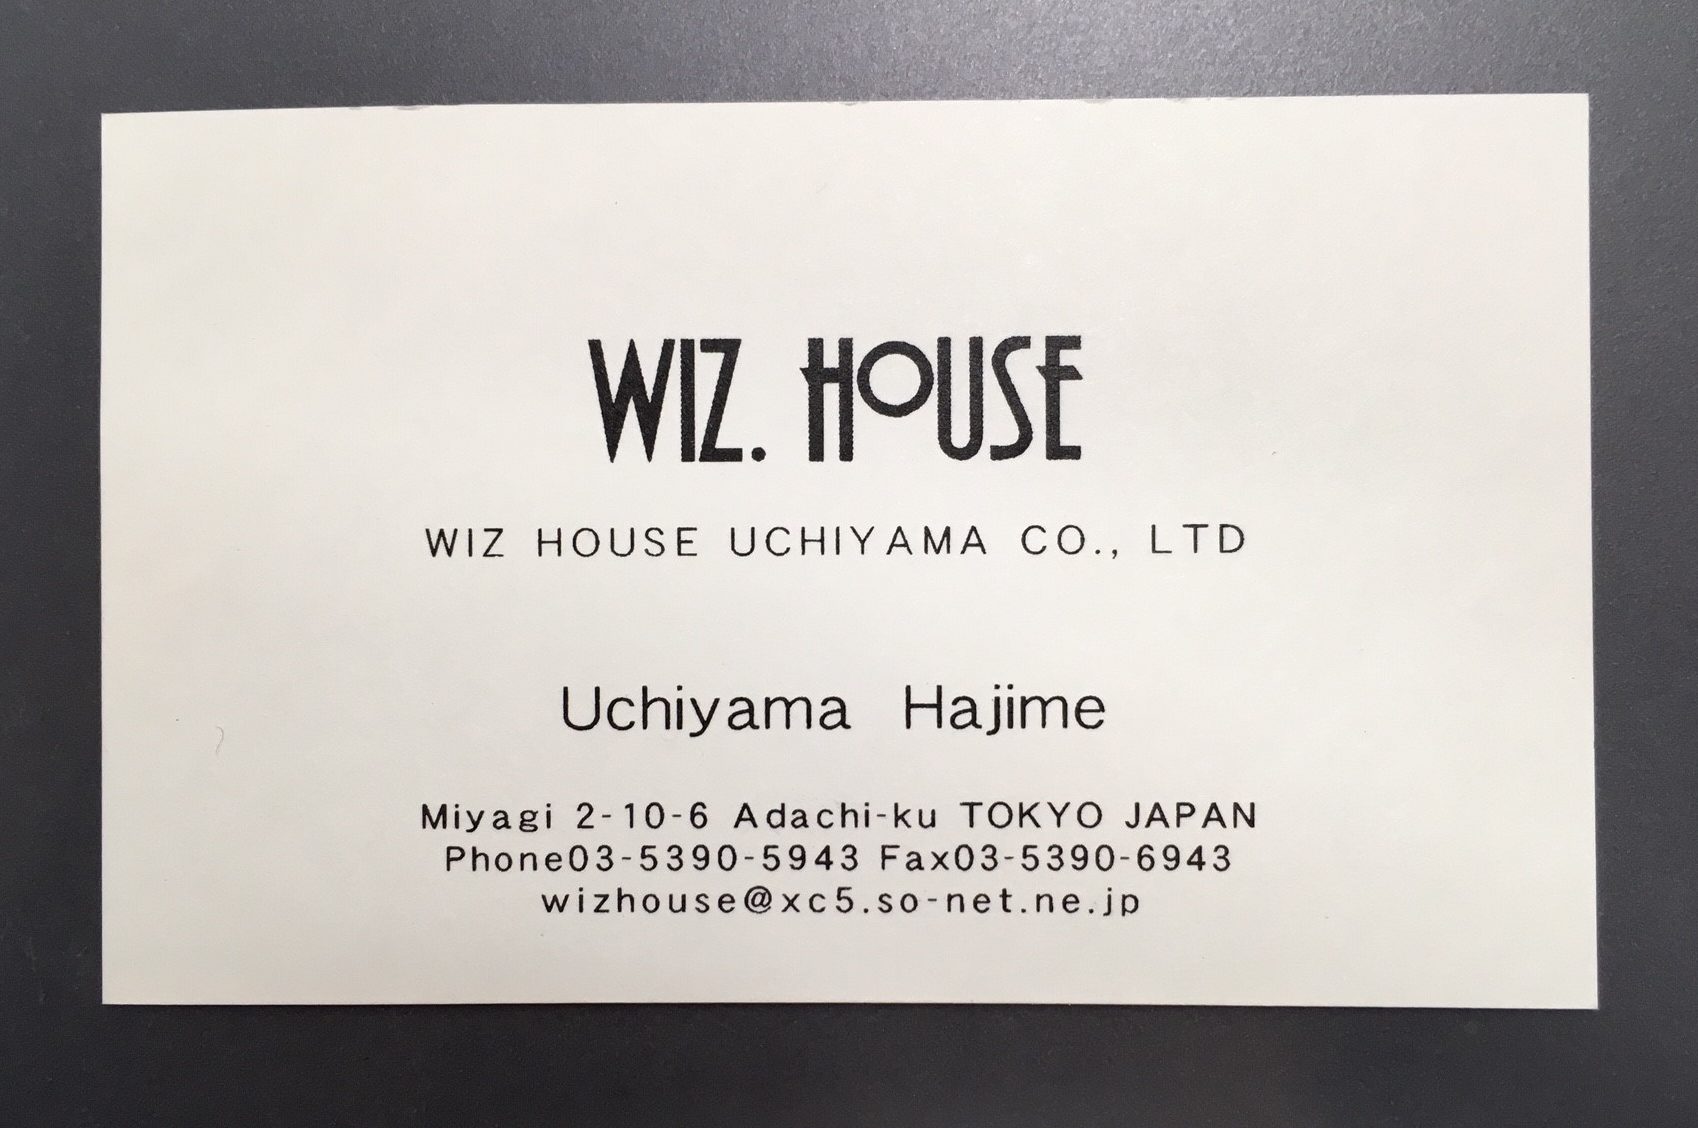 WIZHOUSE　UCHIYAMA（有）　ウィズ・ハウス･ウチヤマ